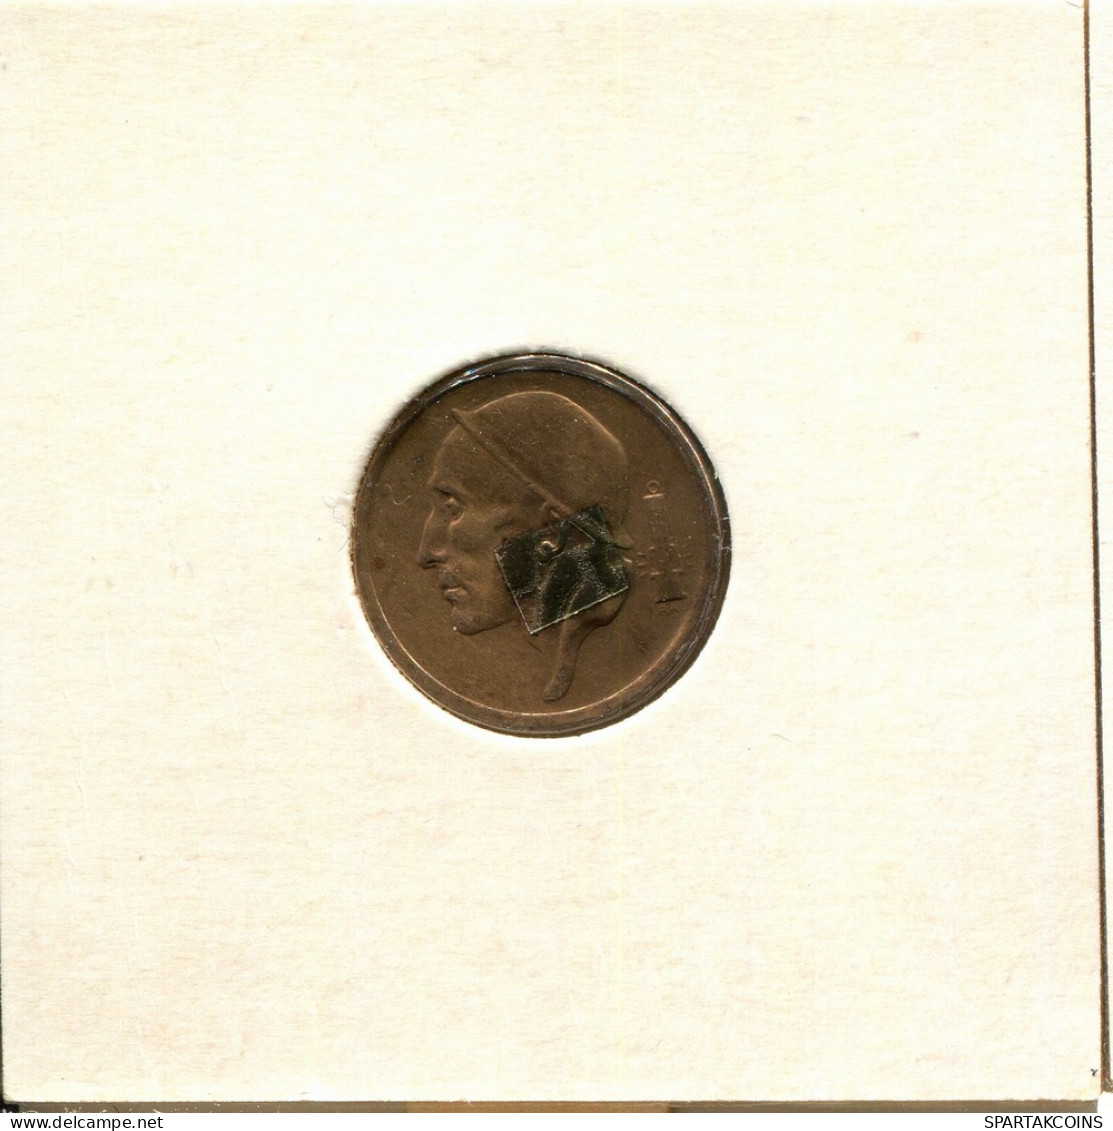 20 CENTIMES 1960 DUTCH Text BELGIEN BELGIUM Münze #BB149.D - 25 Cents